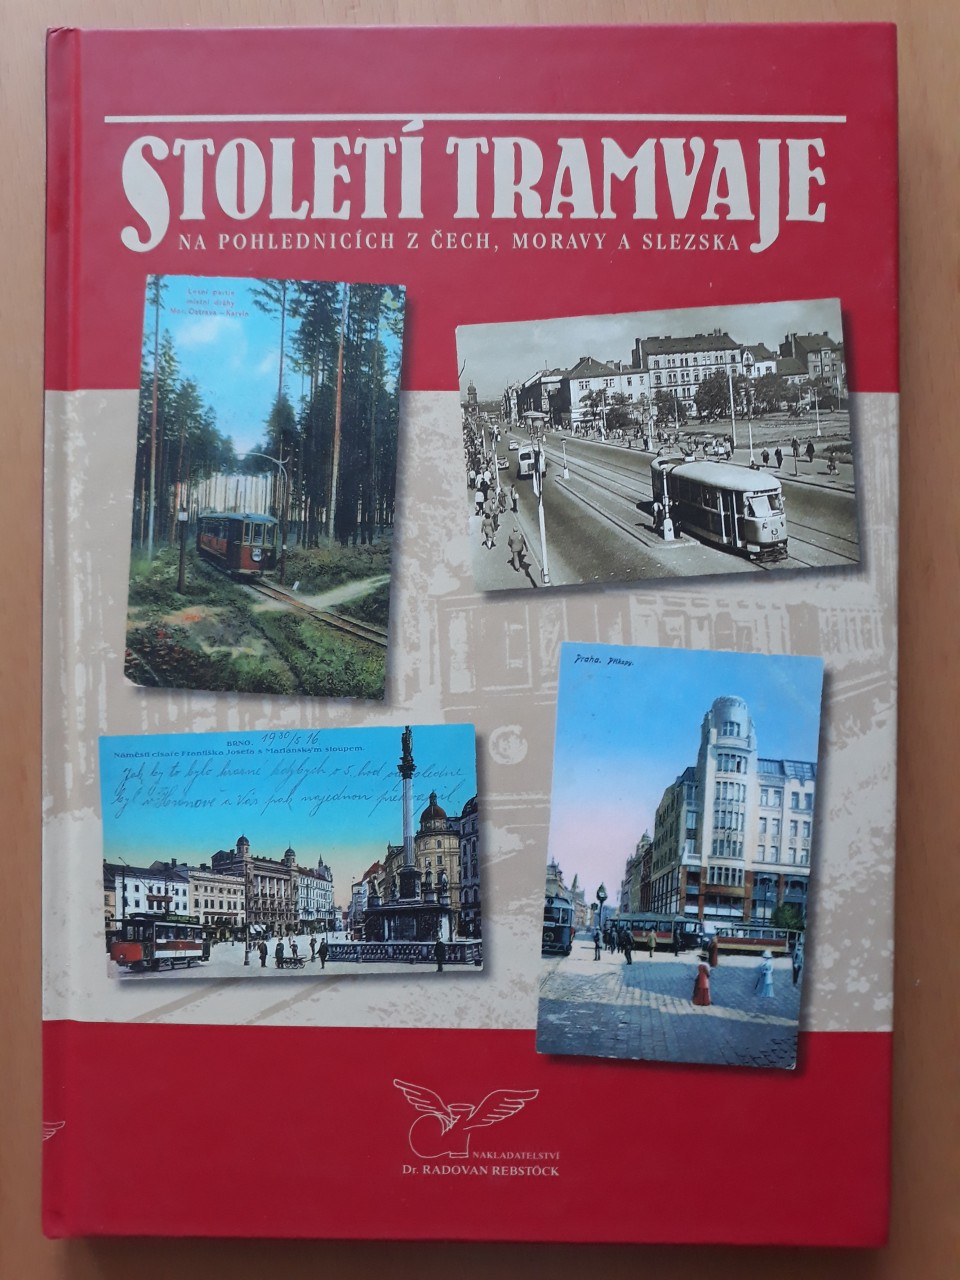 Stolet tramvaje na pohlednicch 2004